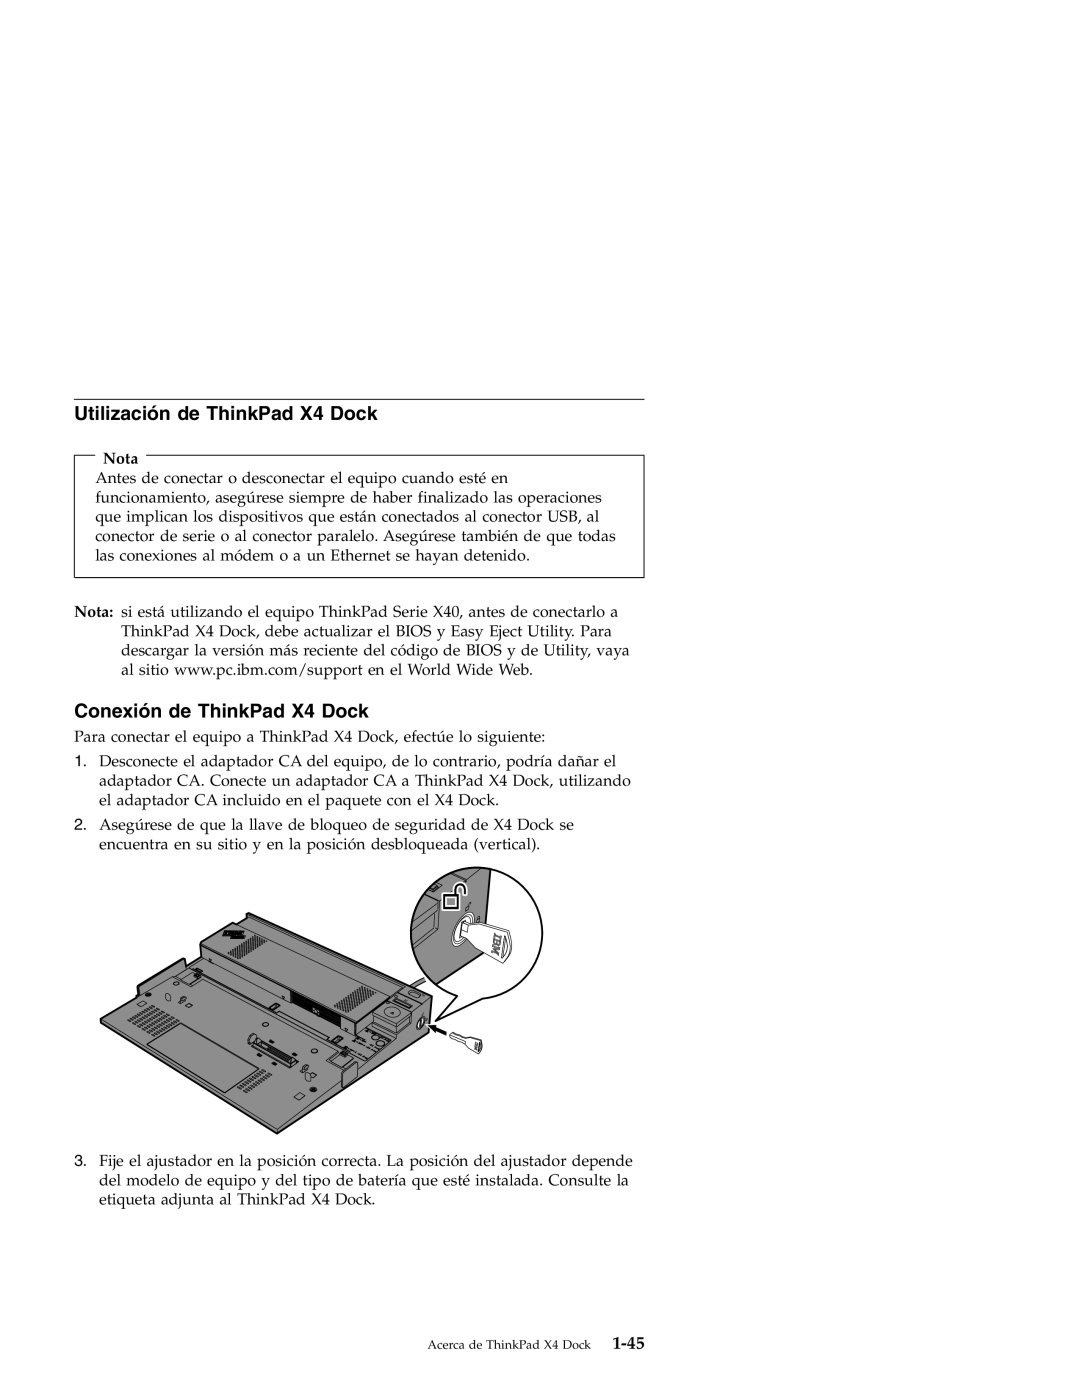 IBM manual Utilización de ThinkPad X4 Dock, Conexión de ThinkPad X4 Dock, Nota 